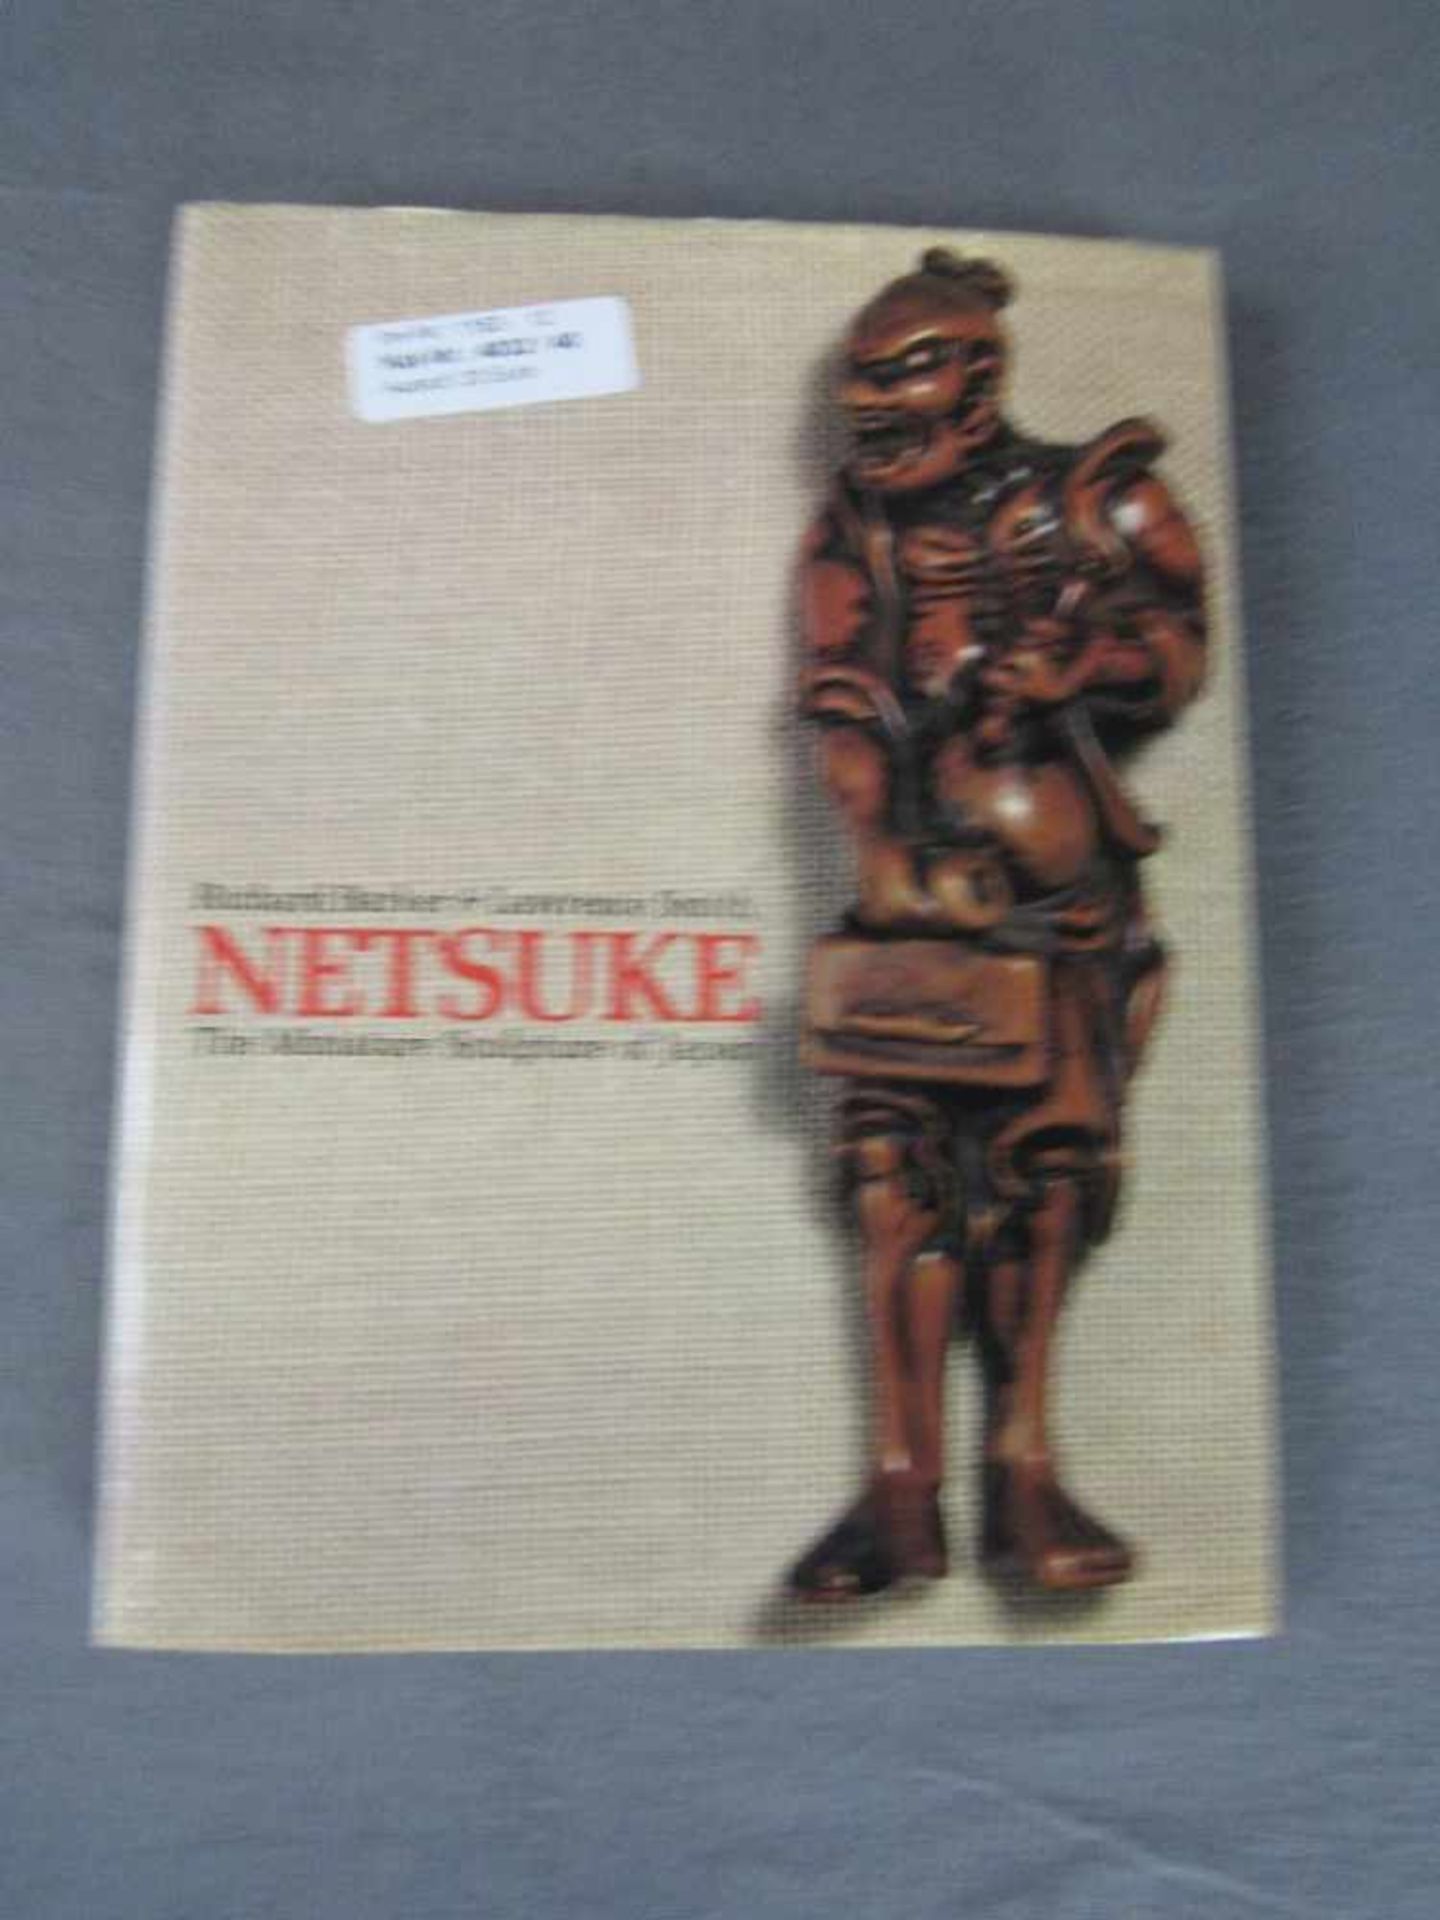 Buch Netsuke the Miniatur Sculpture of Japan